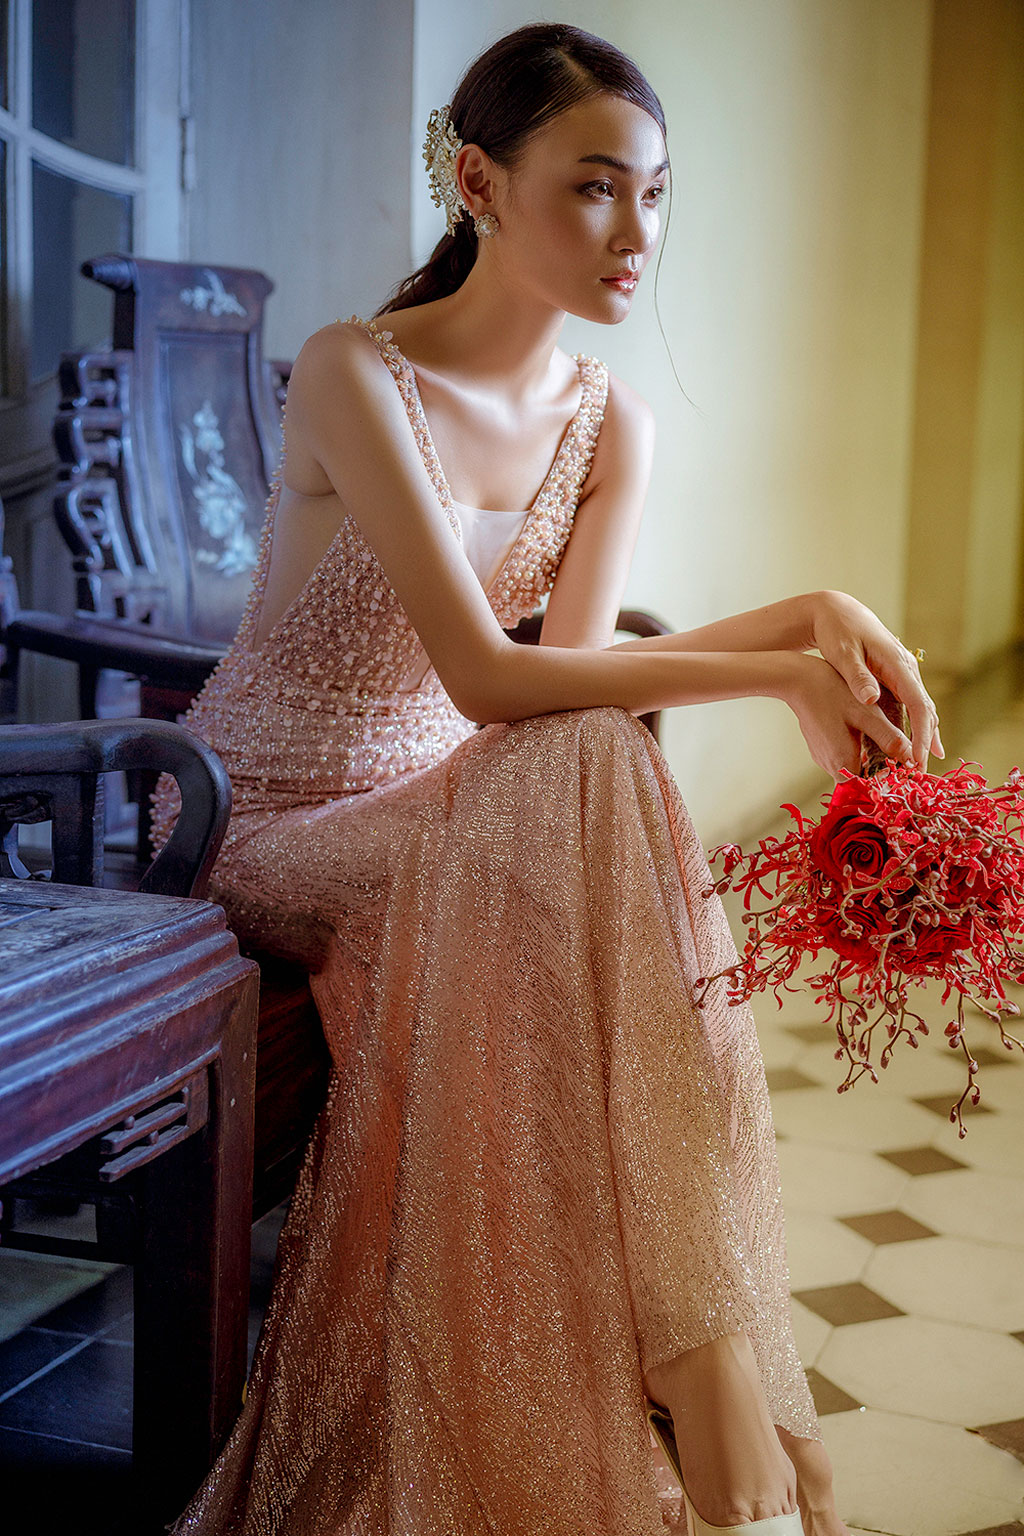 Người mẫu Thùy Trang đẹp lạnh lùng trong váy cô dâu6